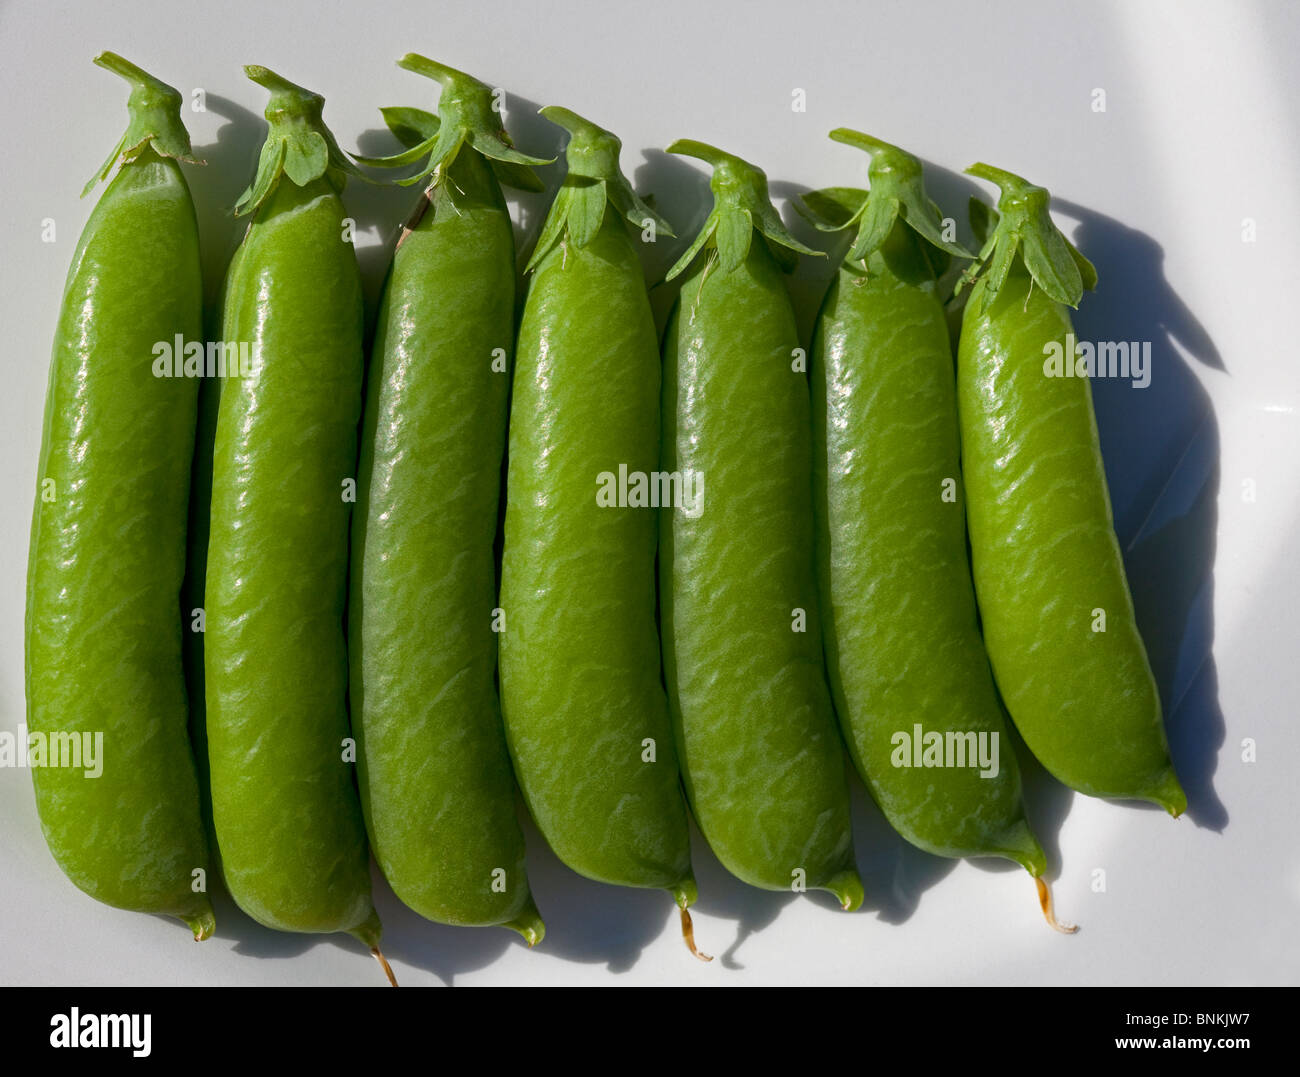 Sept gousses de pois verts frais mûrs sur une plaque blanche Banque D'Images